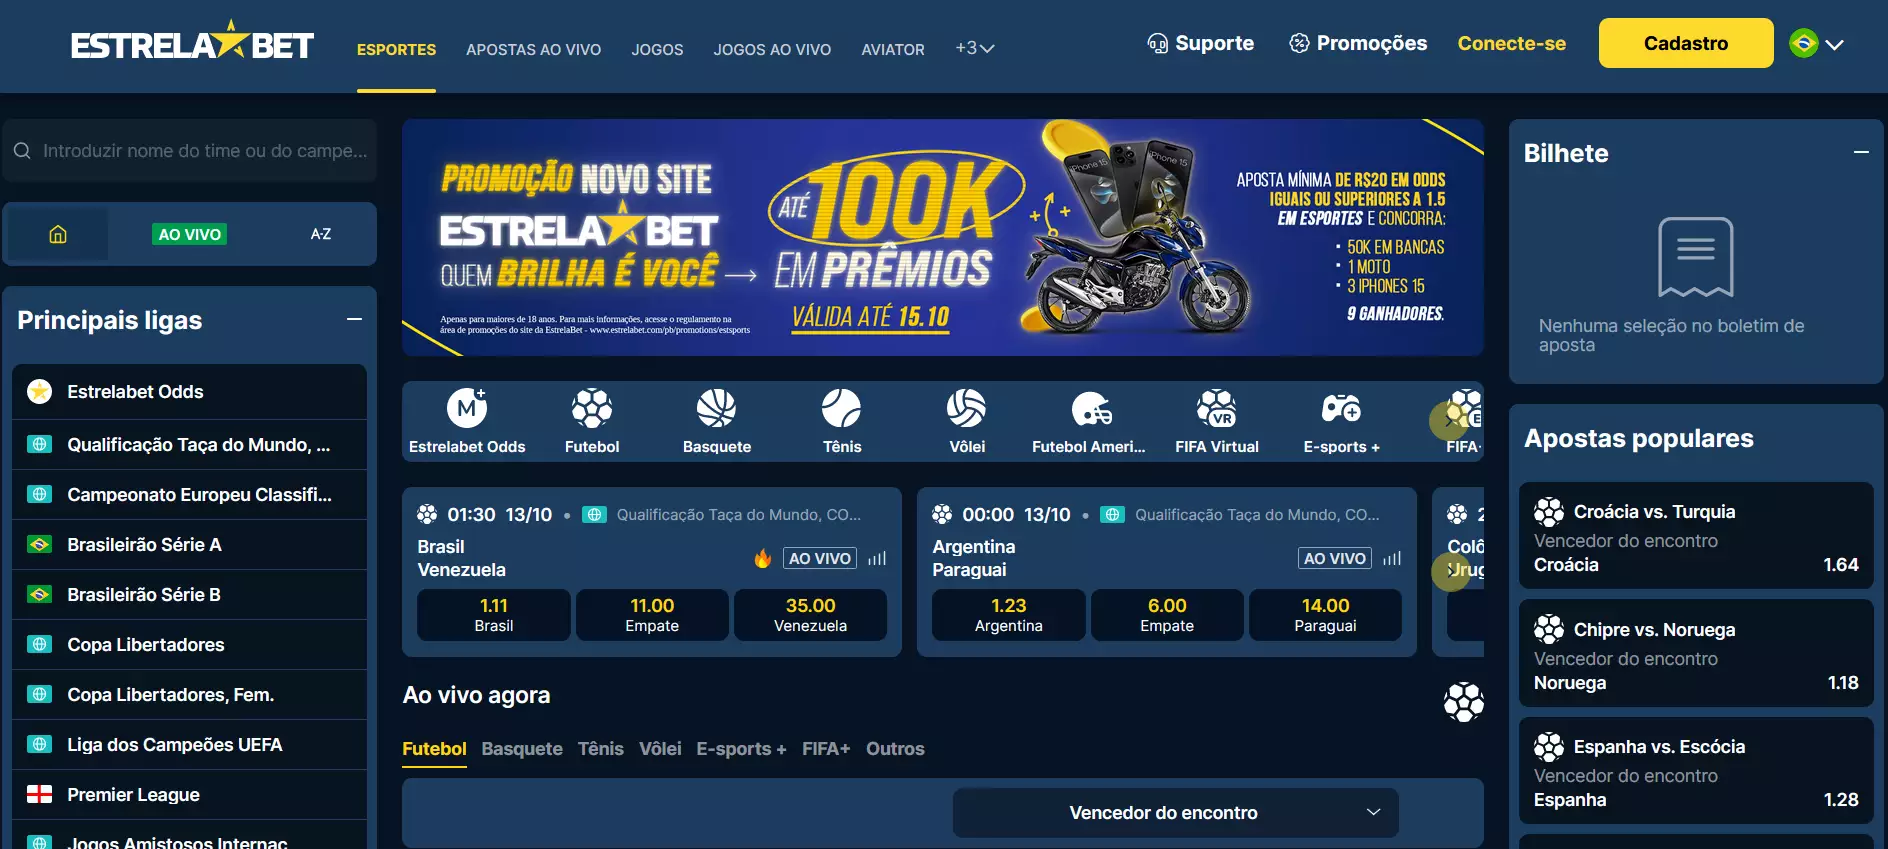 Bônus de boas-vindas de 100% do Cassino Online Estrela Bet